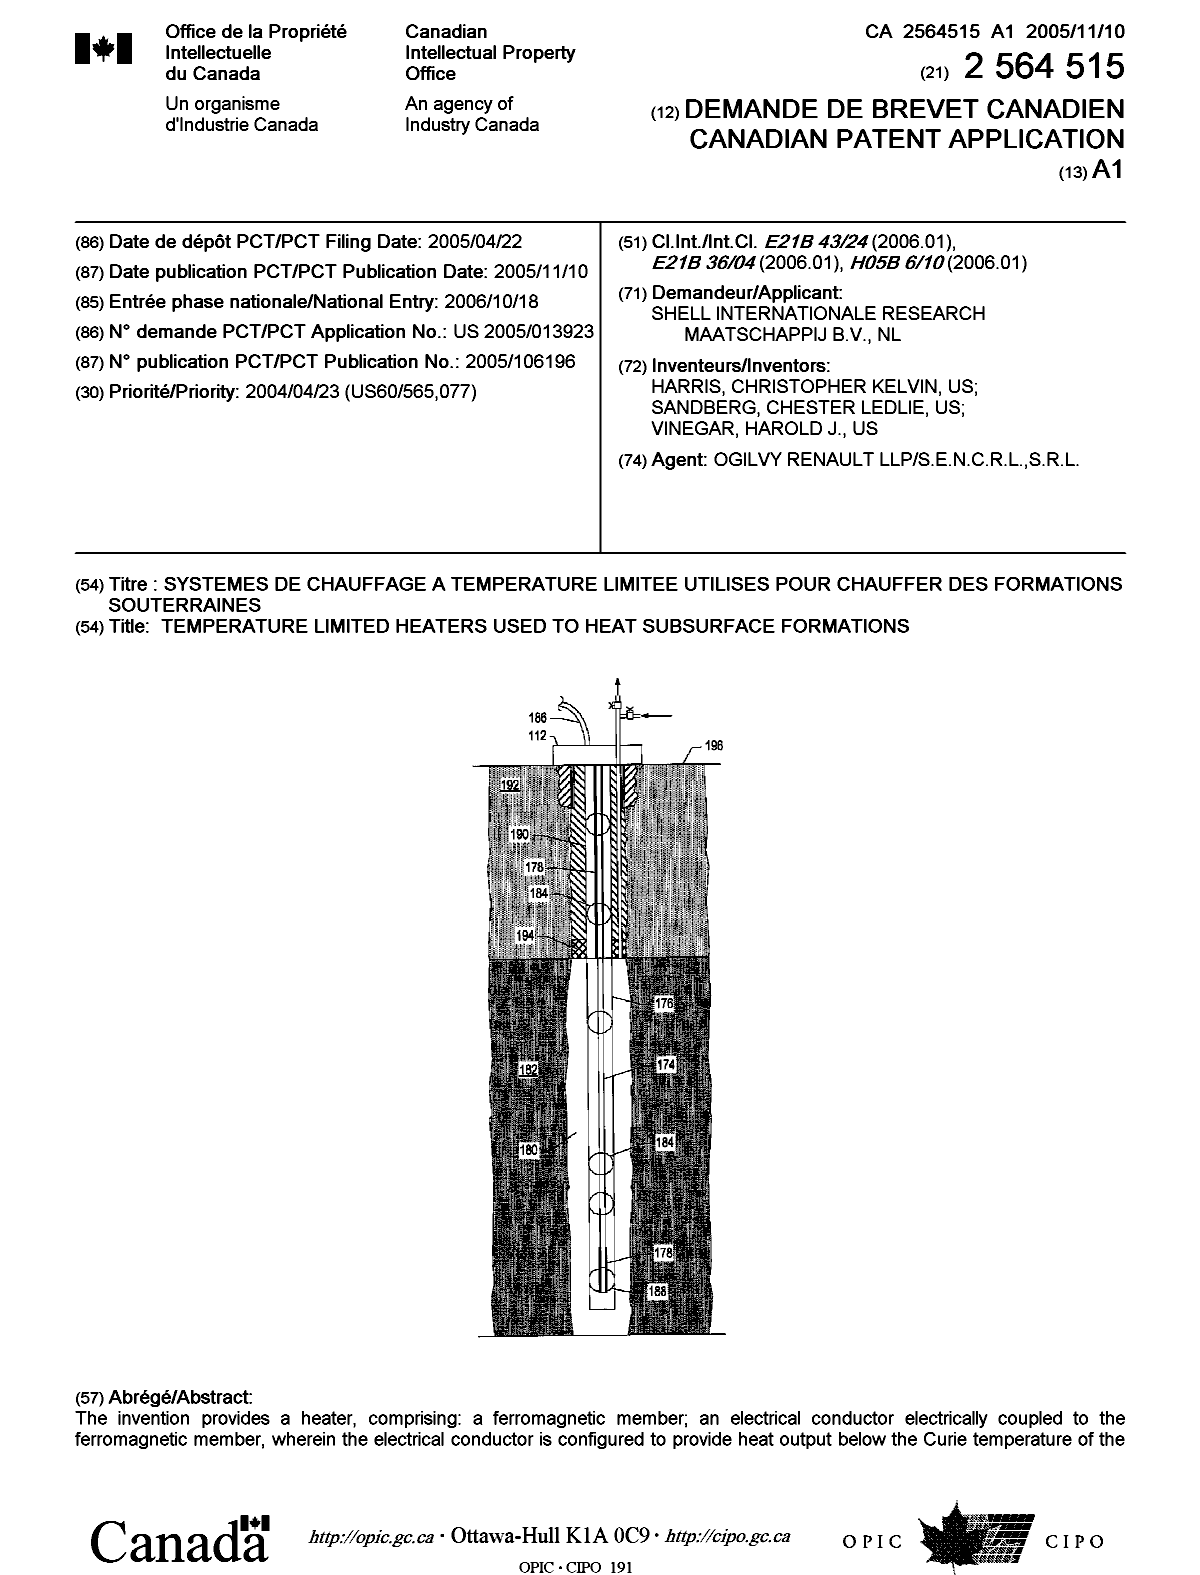 Document de brevet canadien 2564515. Page couverture 20070208. Image 1 de 2